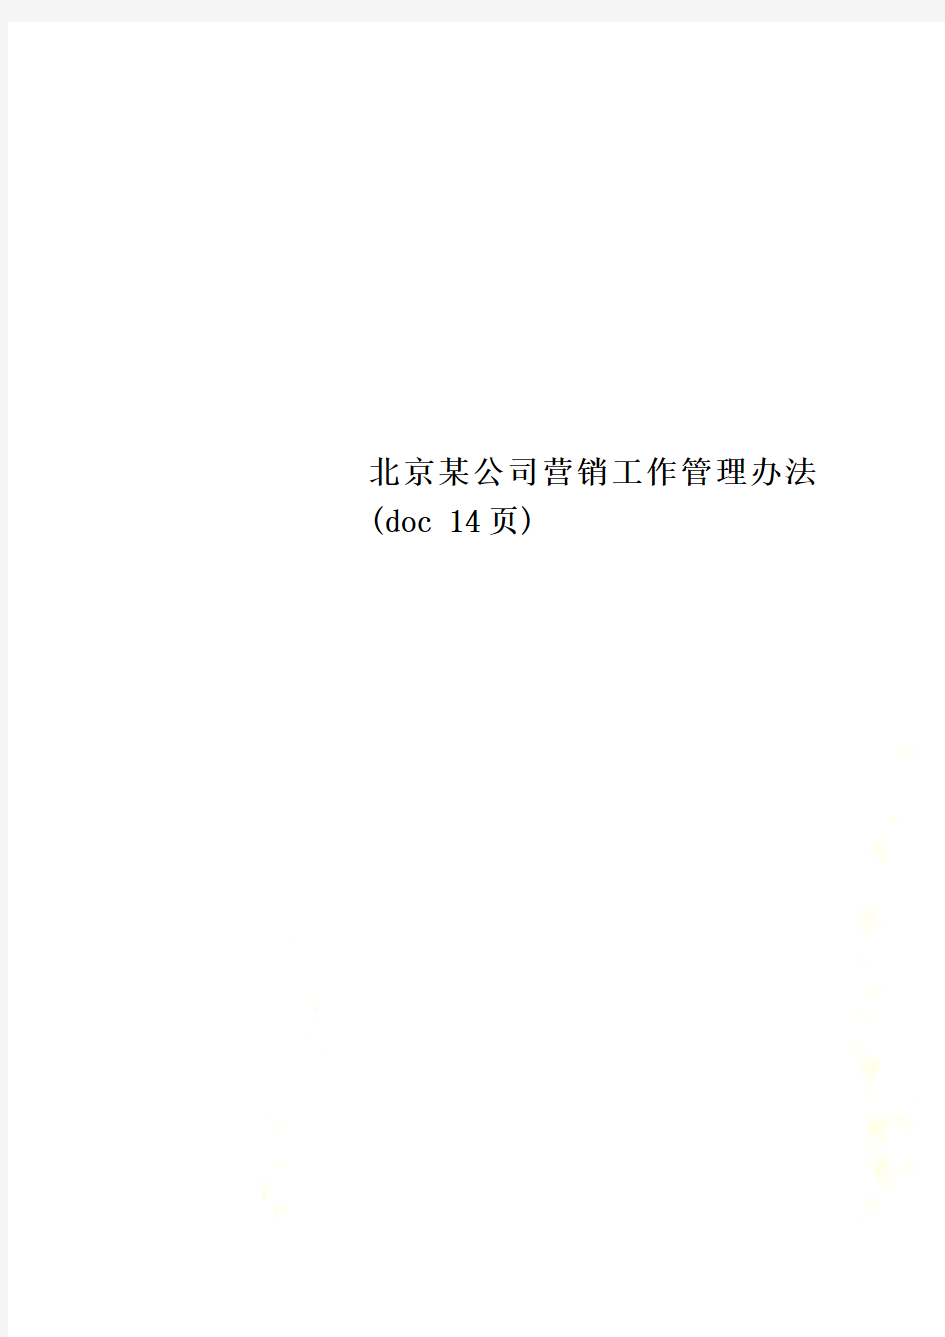 北京某公司营销工作管理办法(doc 14页)